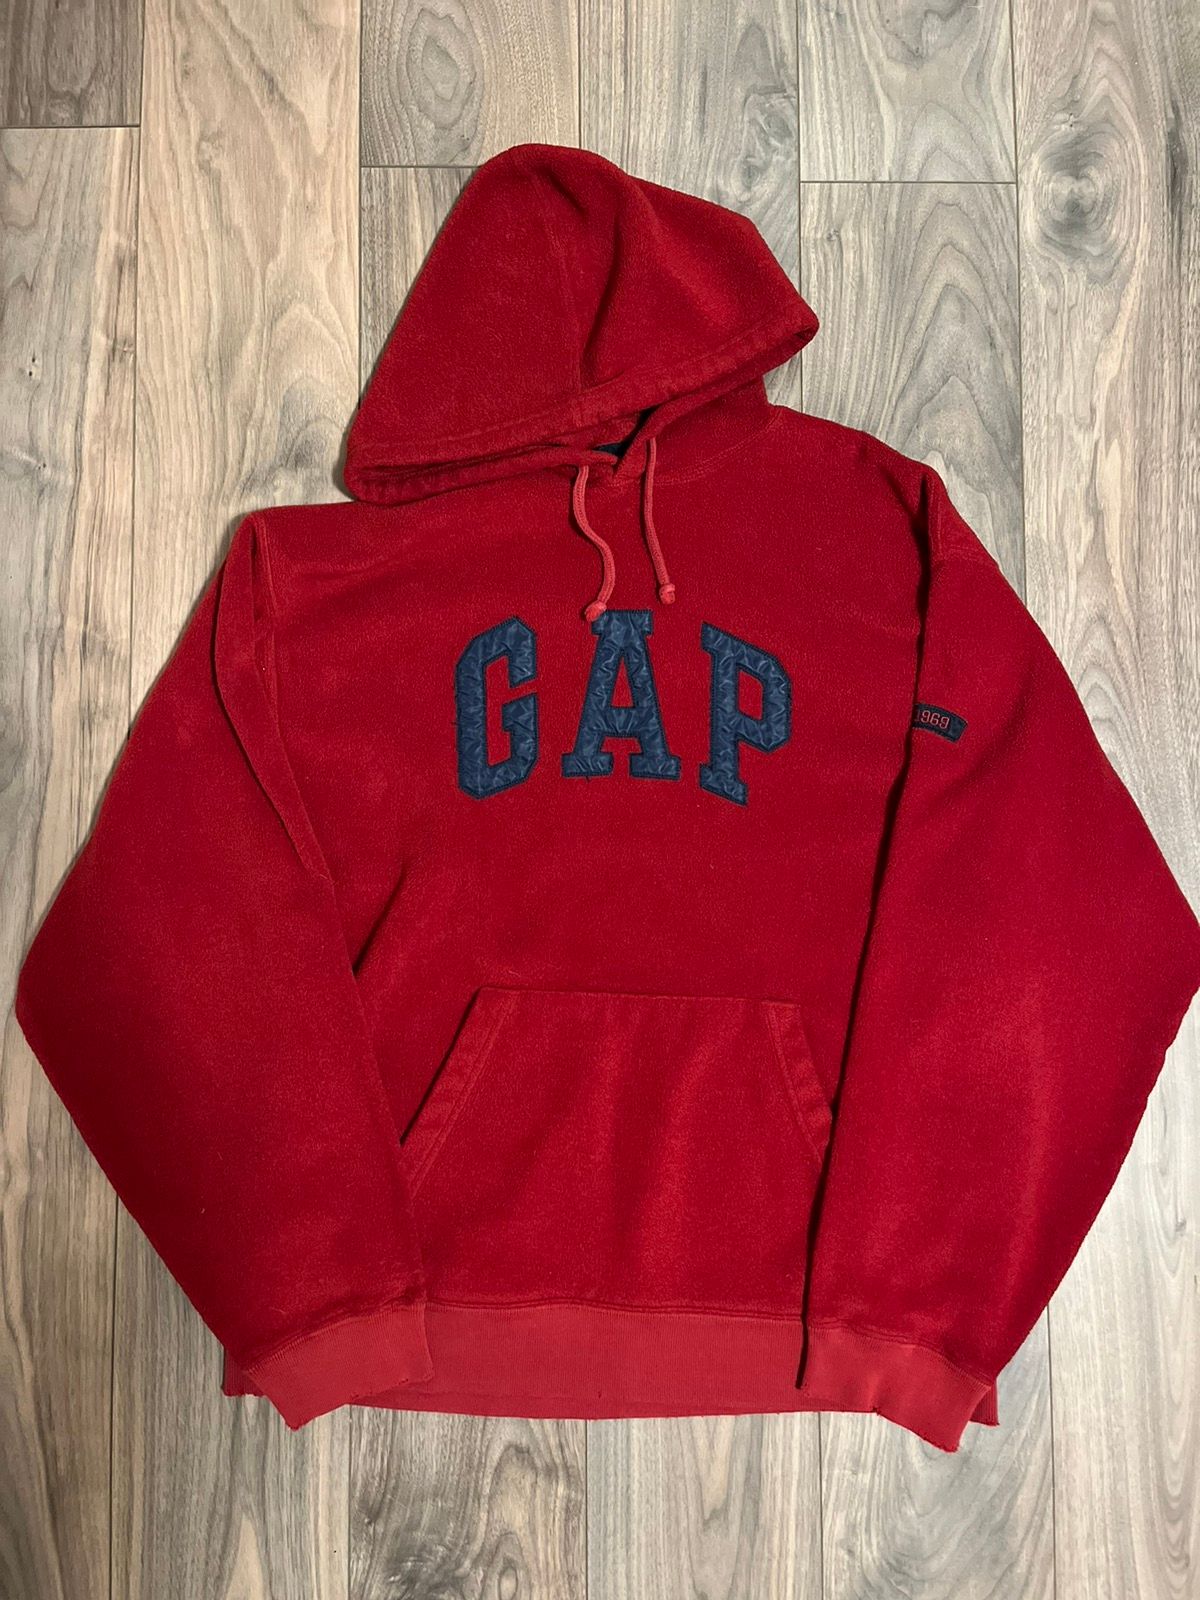 Gap Vintage Gap Fleece Hoodie | Grailed